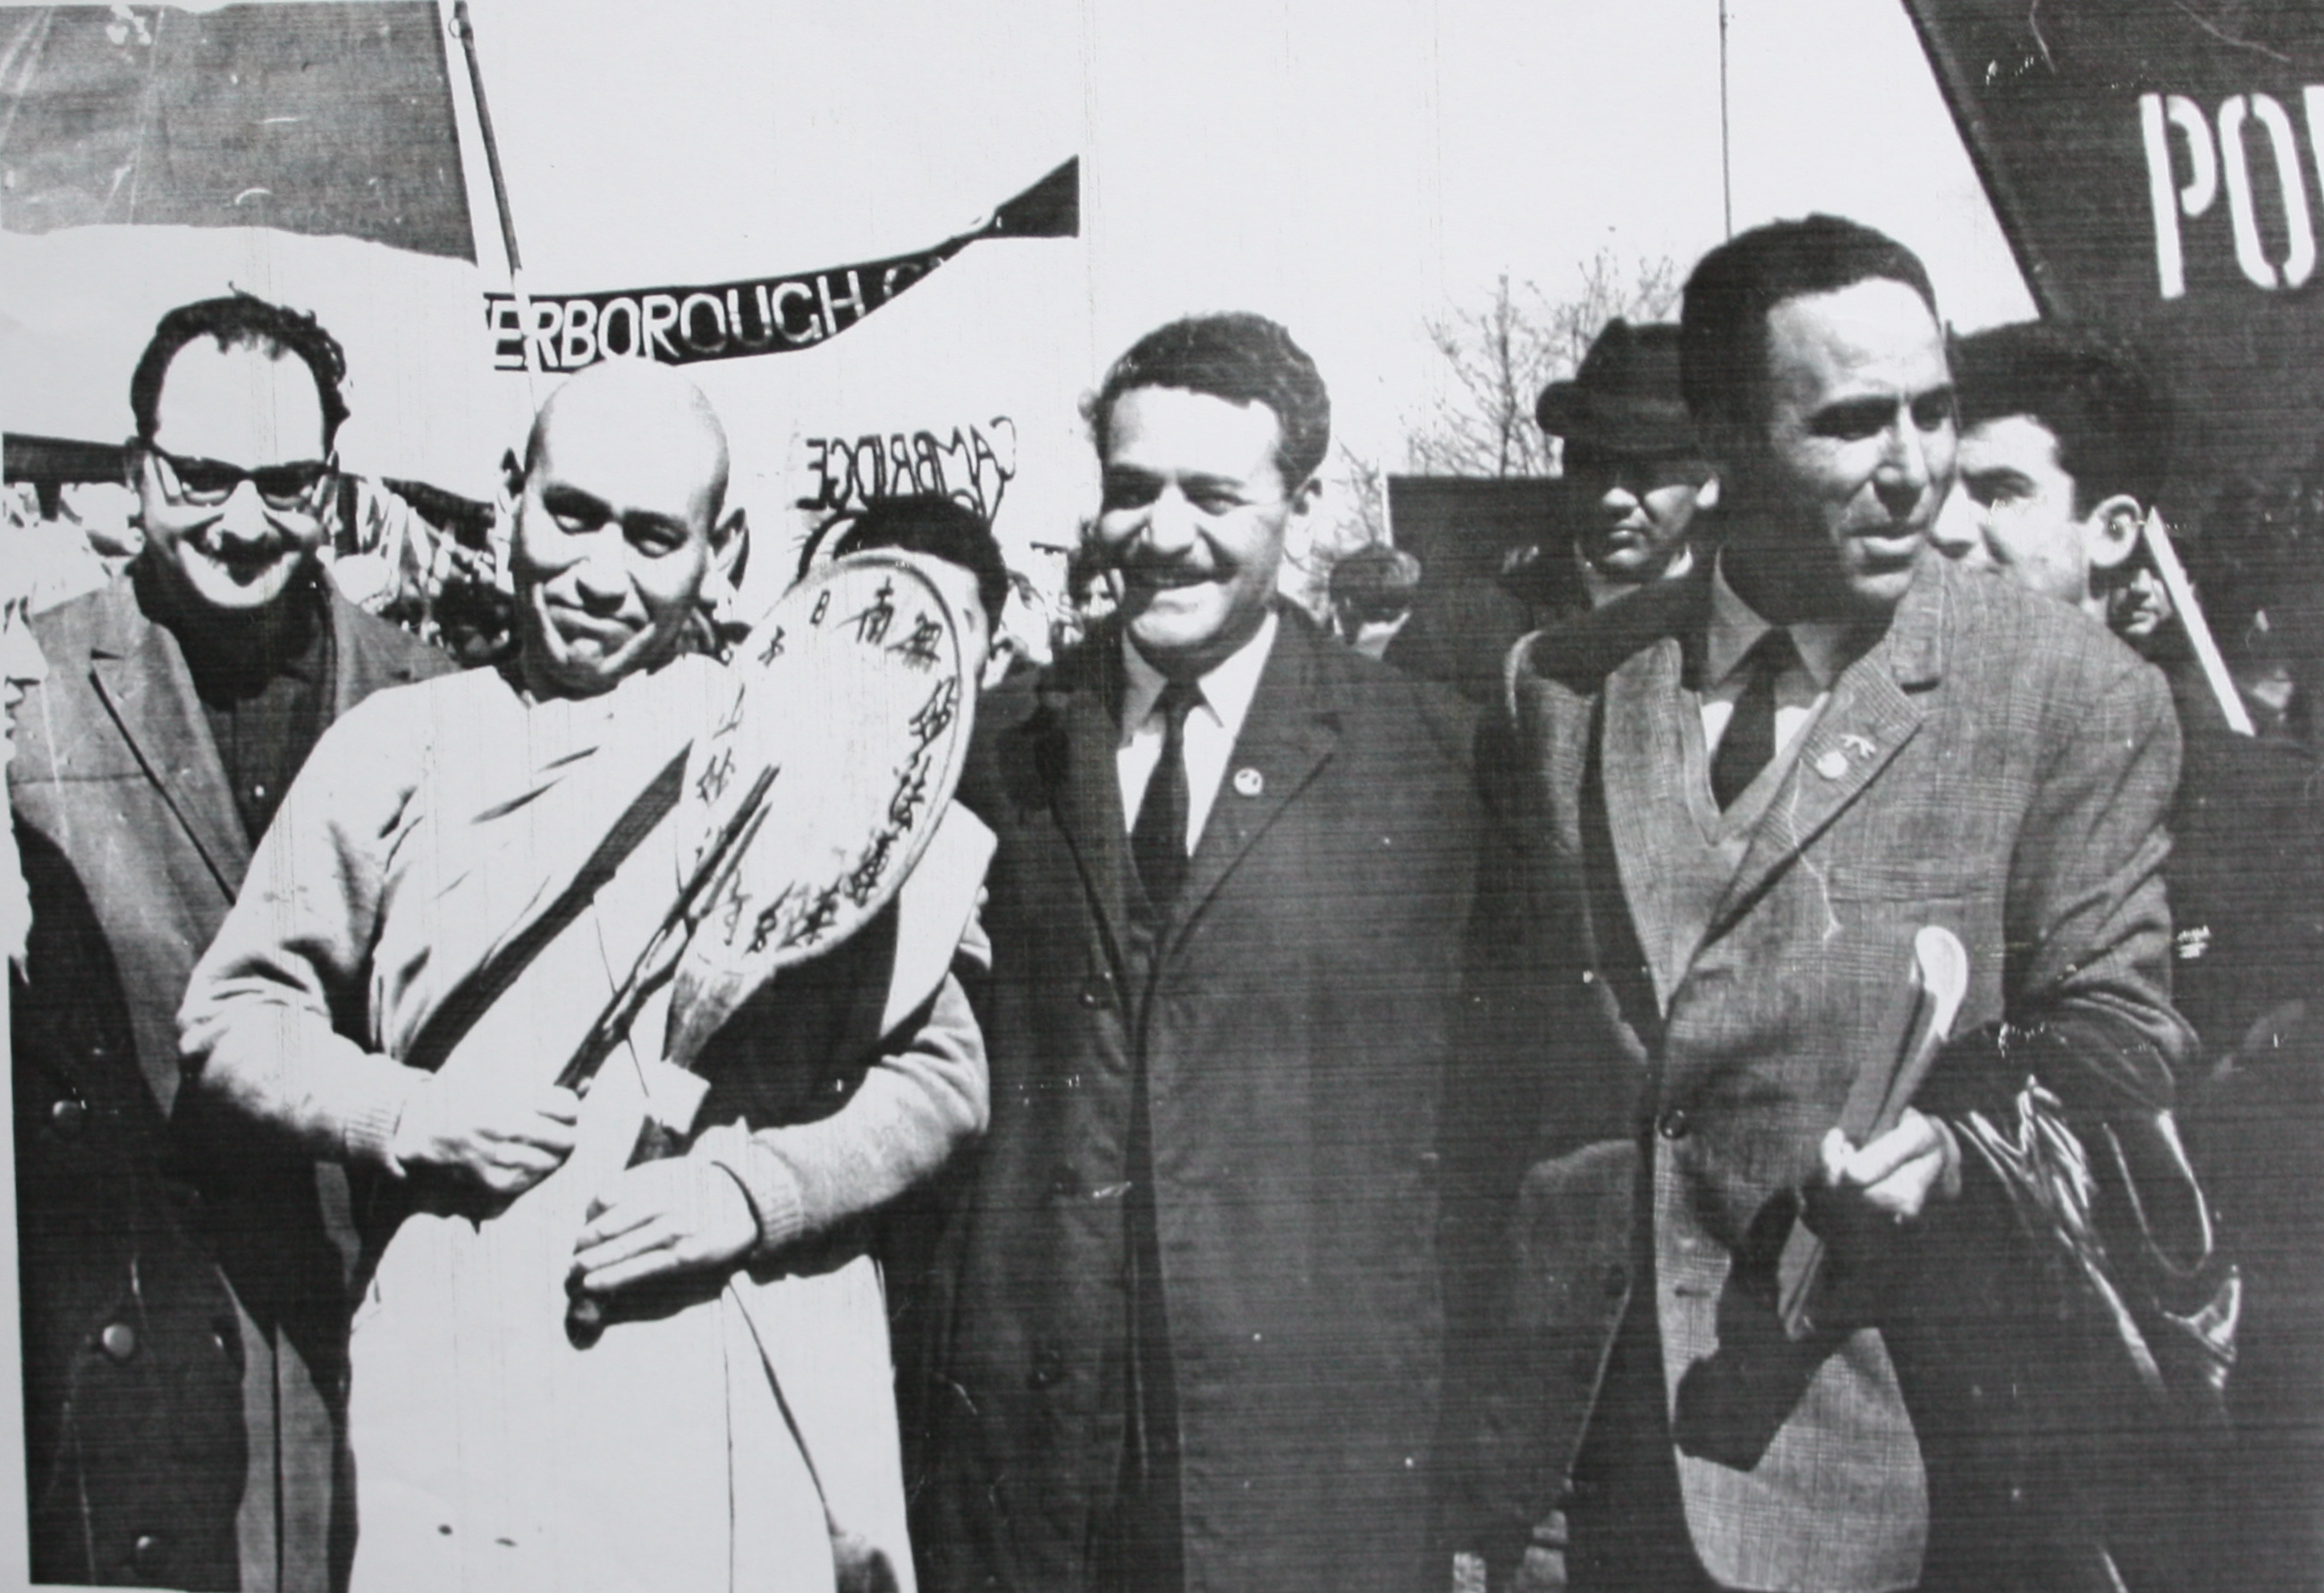 Πορεία στο Ολντερμάστον - Απρίλης 1963. Αριστερά ο Λ. Κύρκος και δεξιά ο Μ. Γλέζος και ο Γρ. Λαμπράκης